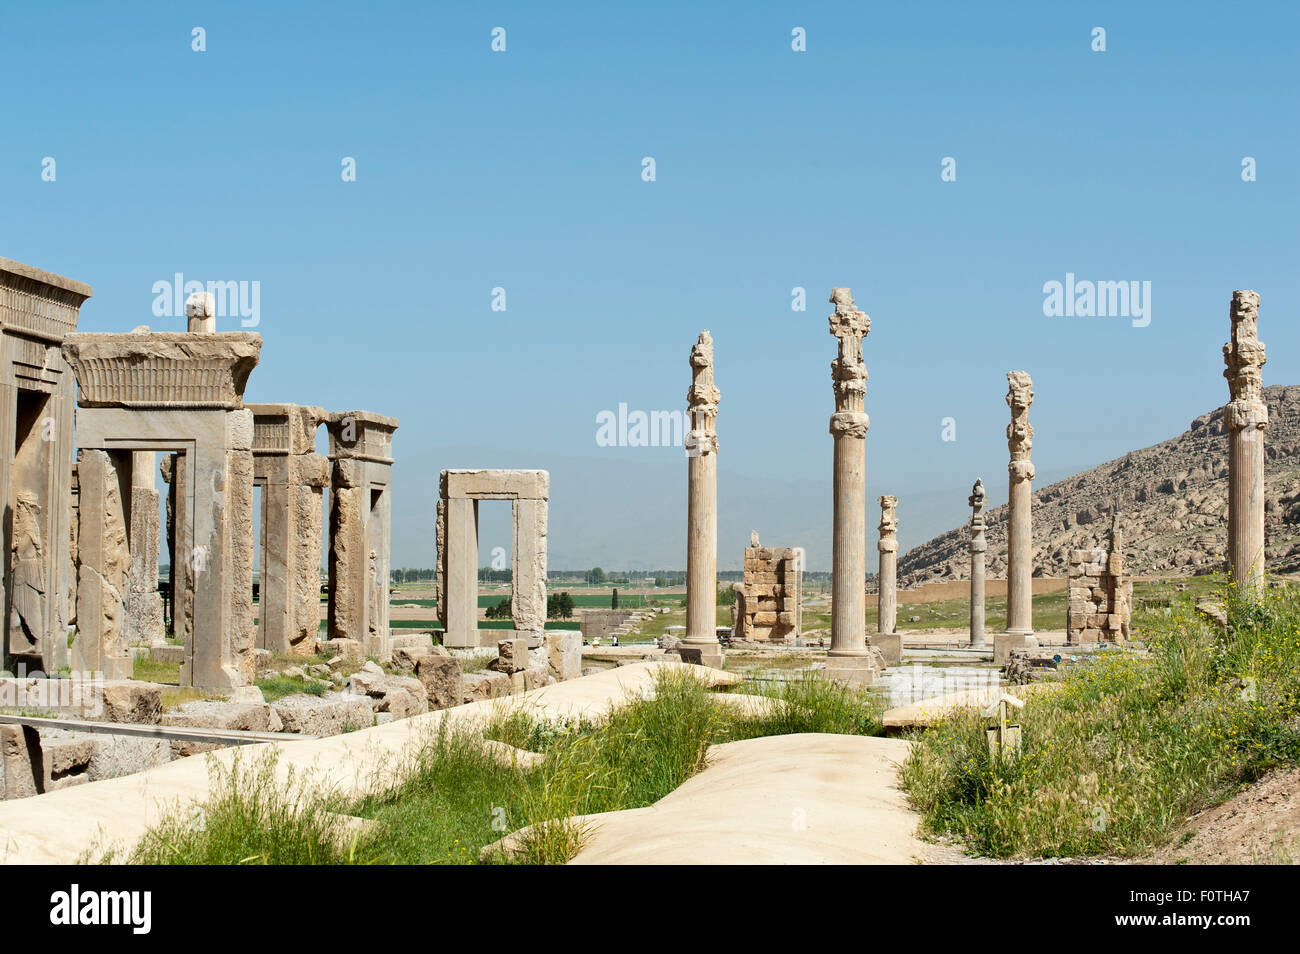 Portes et piliers, palais résidentiel de Xerxès et Apadana, capitale royale de la Perse ancienne Persepolis, Iran Banque D'Images